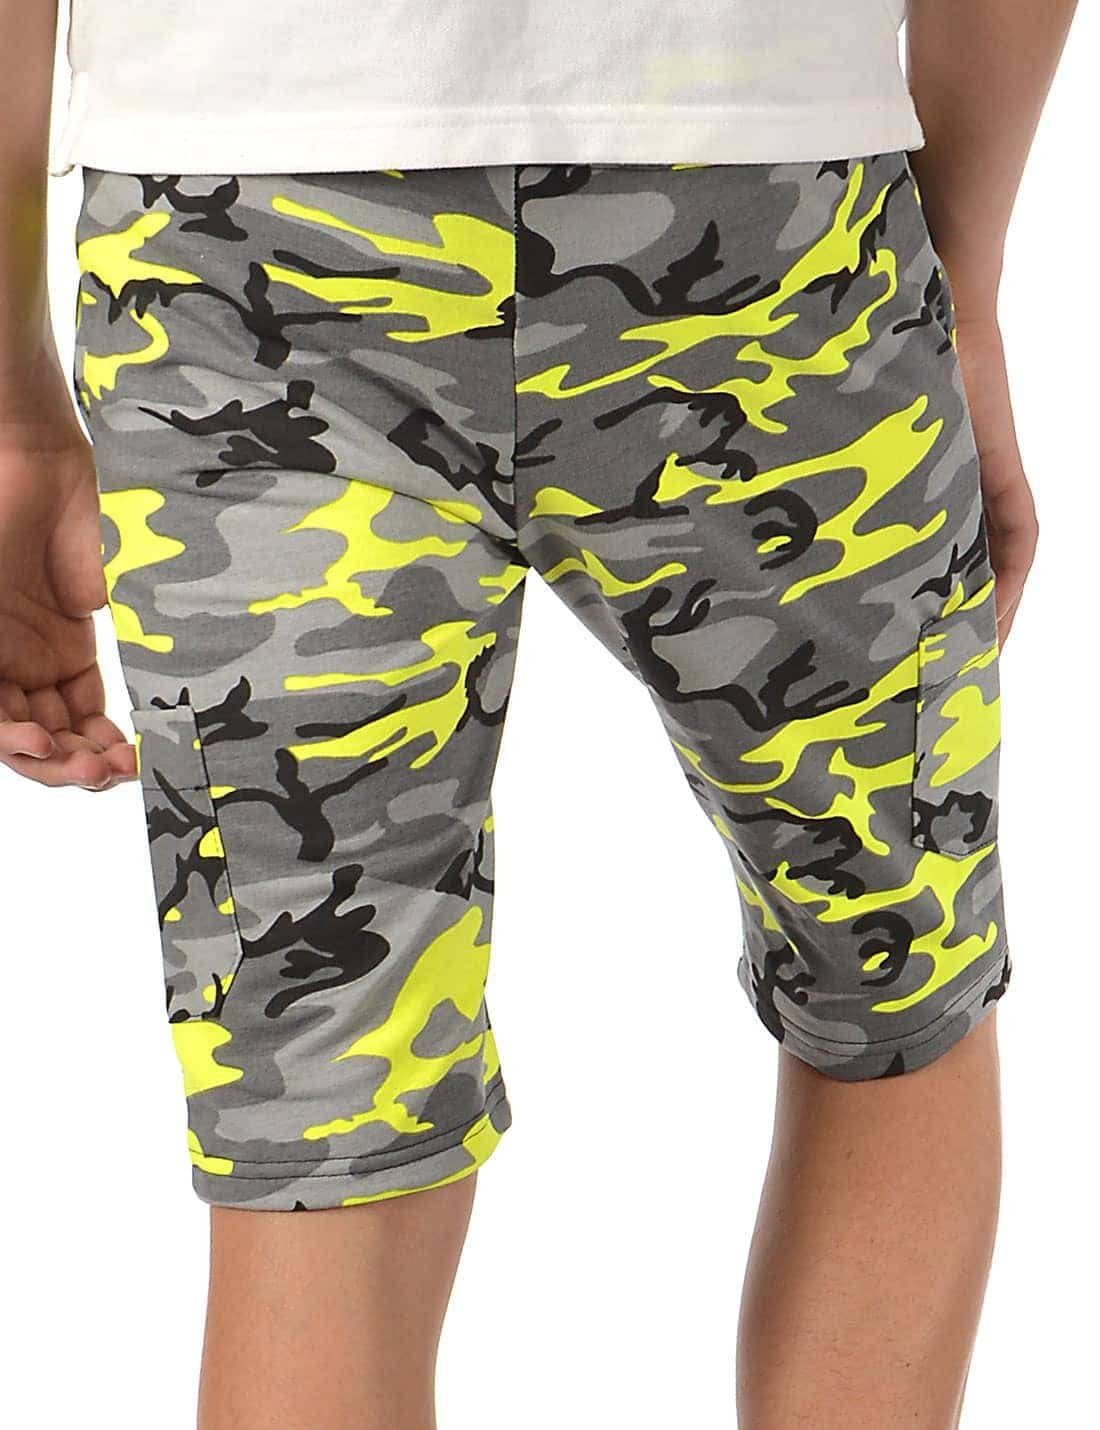 (1-tlg) Casual BEZLIT Cargoshorts Uni Gelb Kinder Jungen Camouflage Stoff Shorts Camouflage